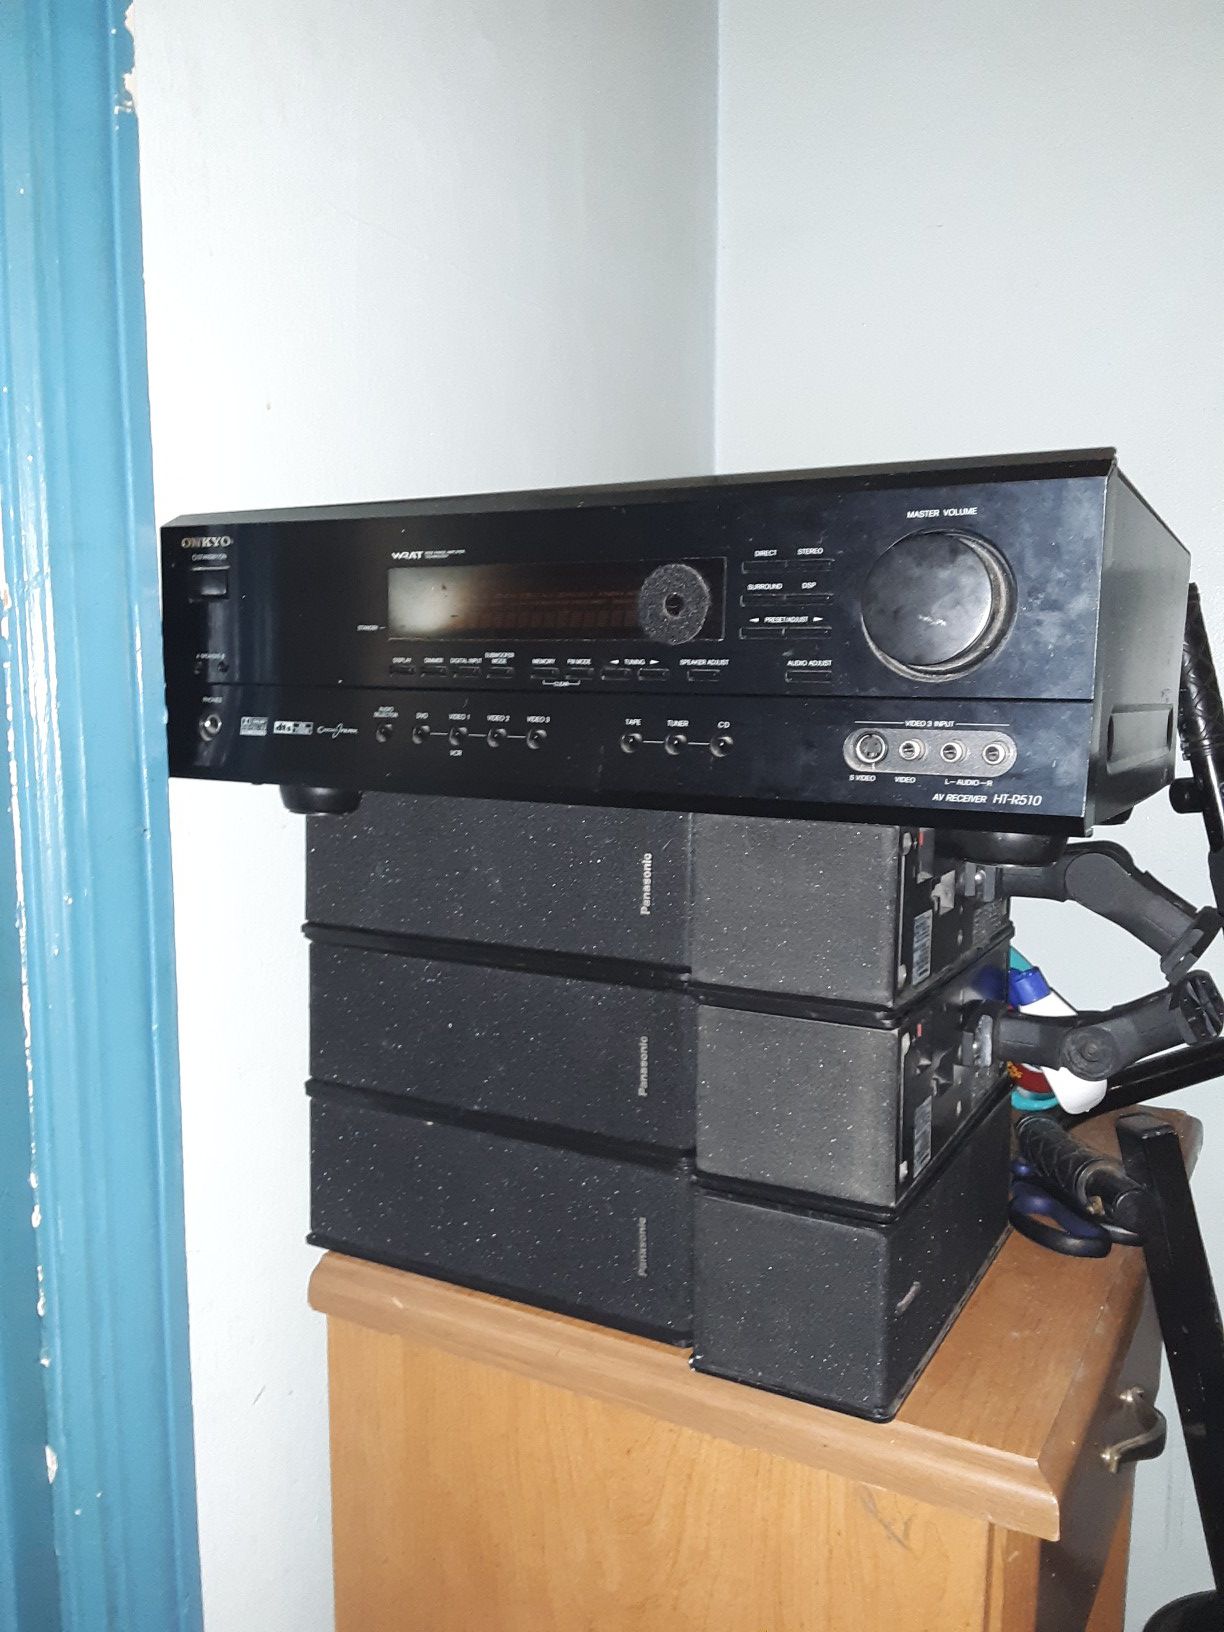 A/V stereo receiver